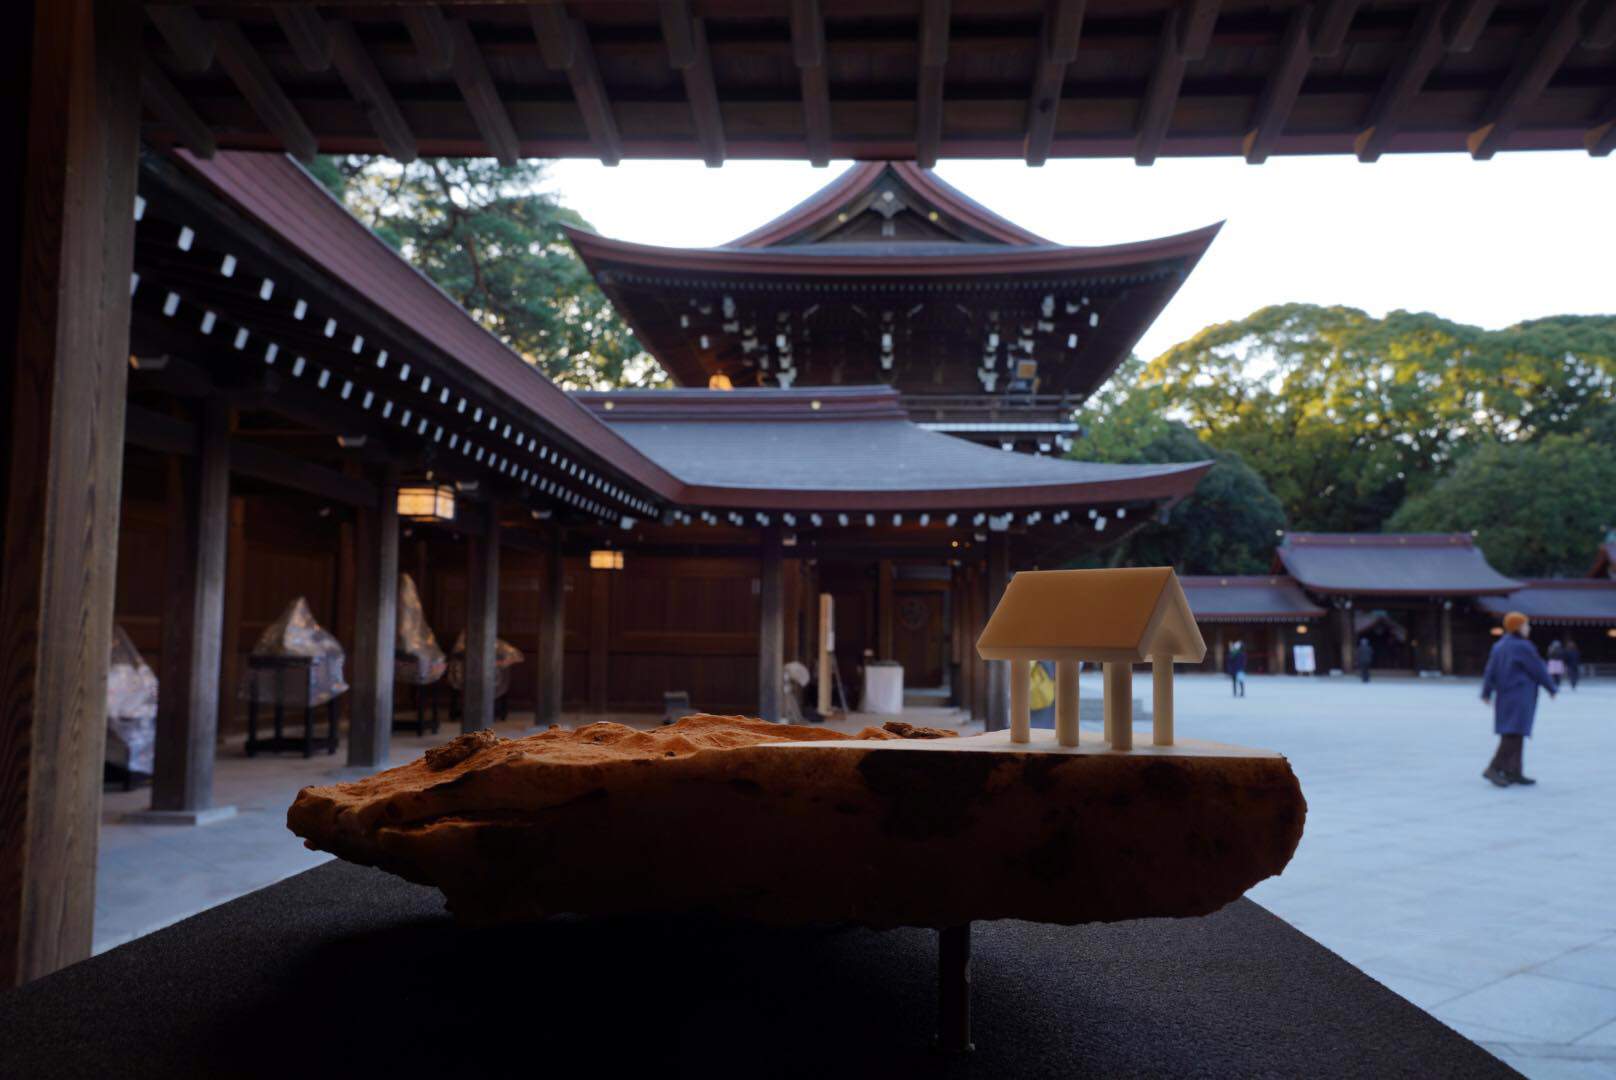 Sculpteurs japonais travaillant le marbre d'Apuane exposés au temple Meiji de Tokyo